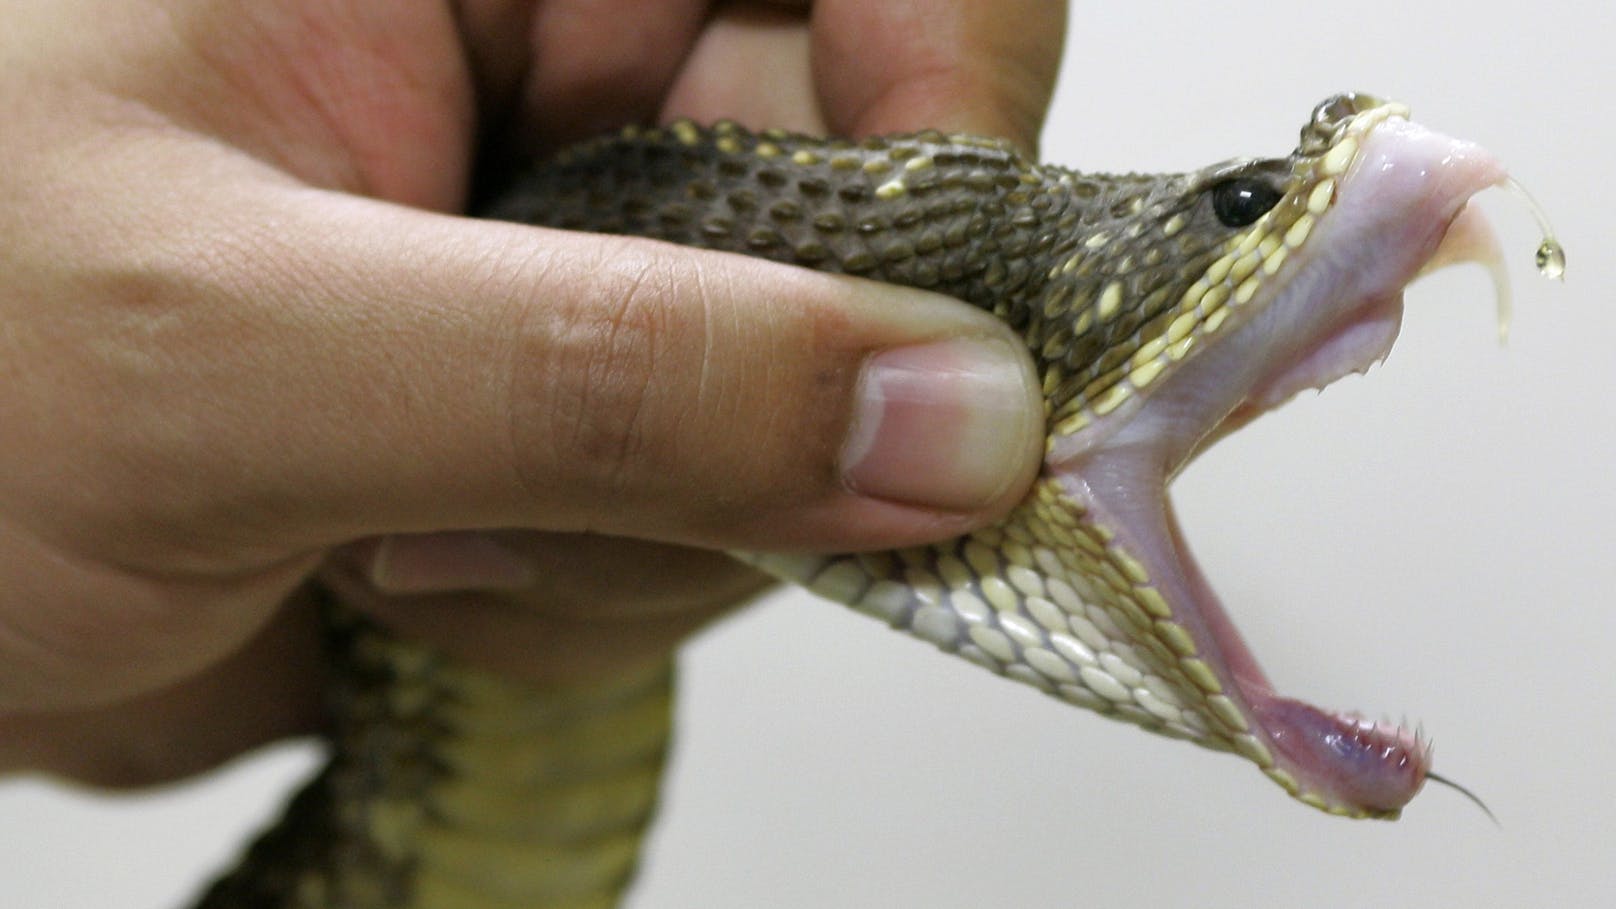 Forscher tritt über 40.000 Mal auf Giftschlangen